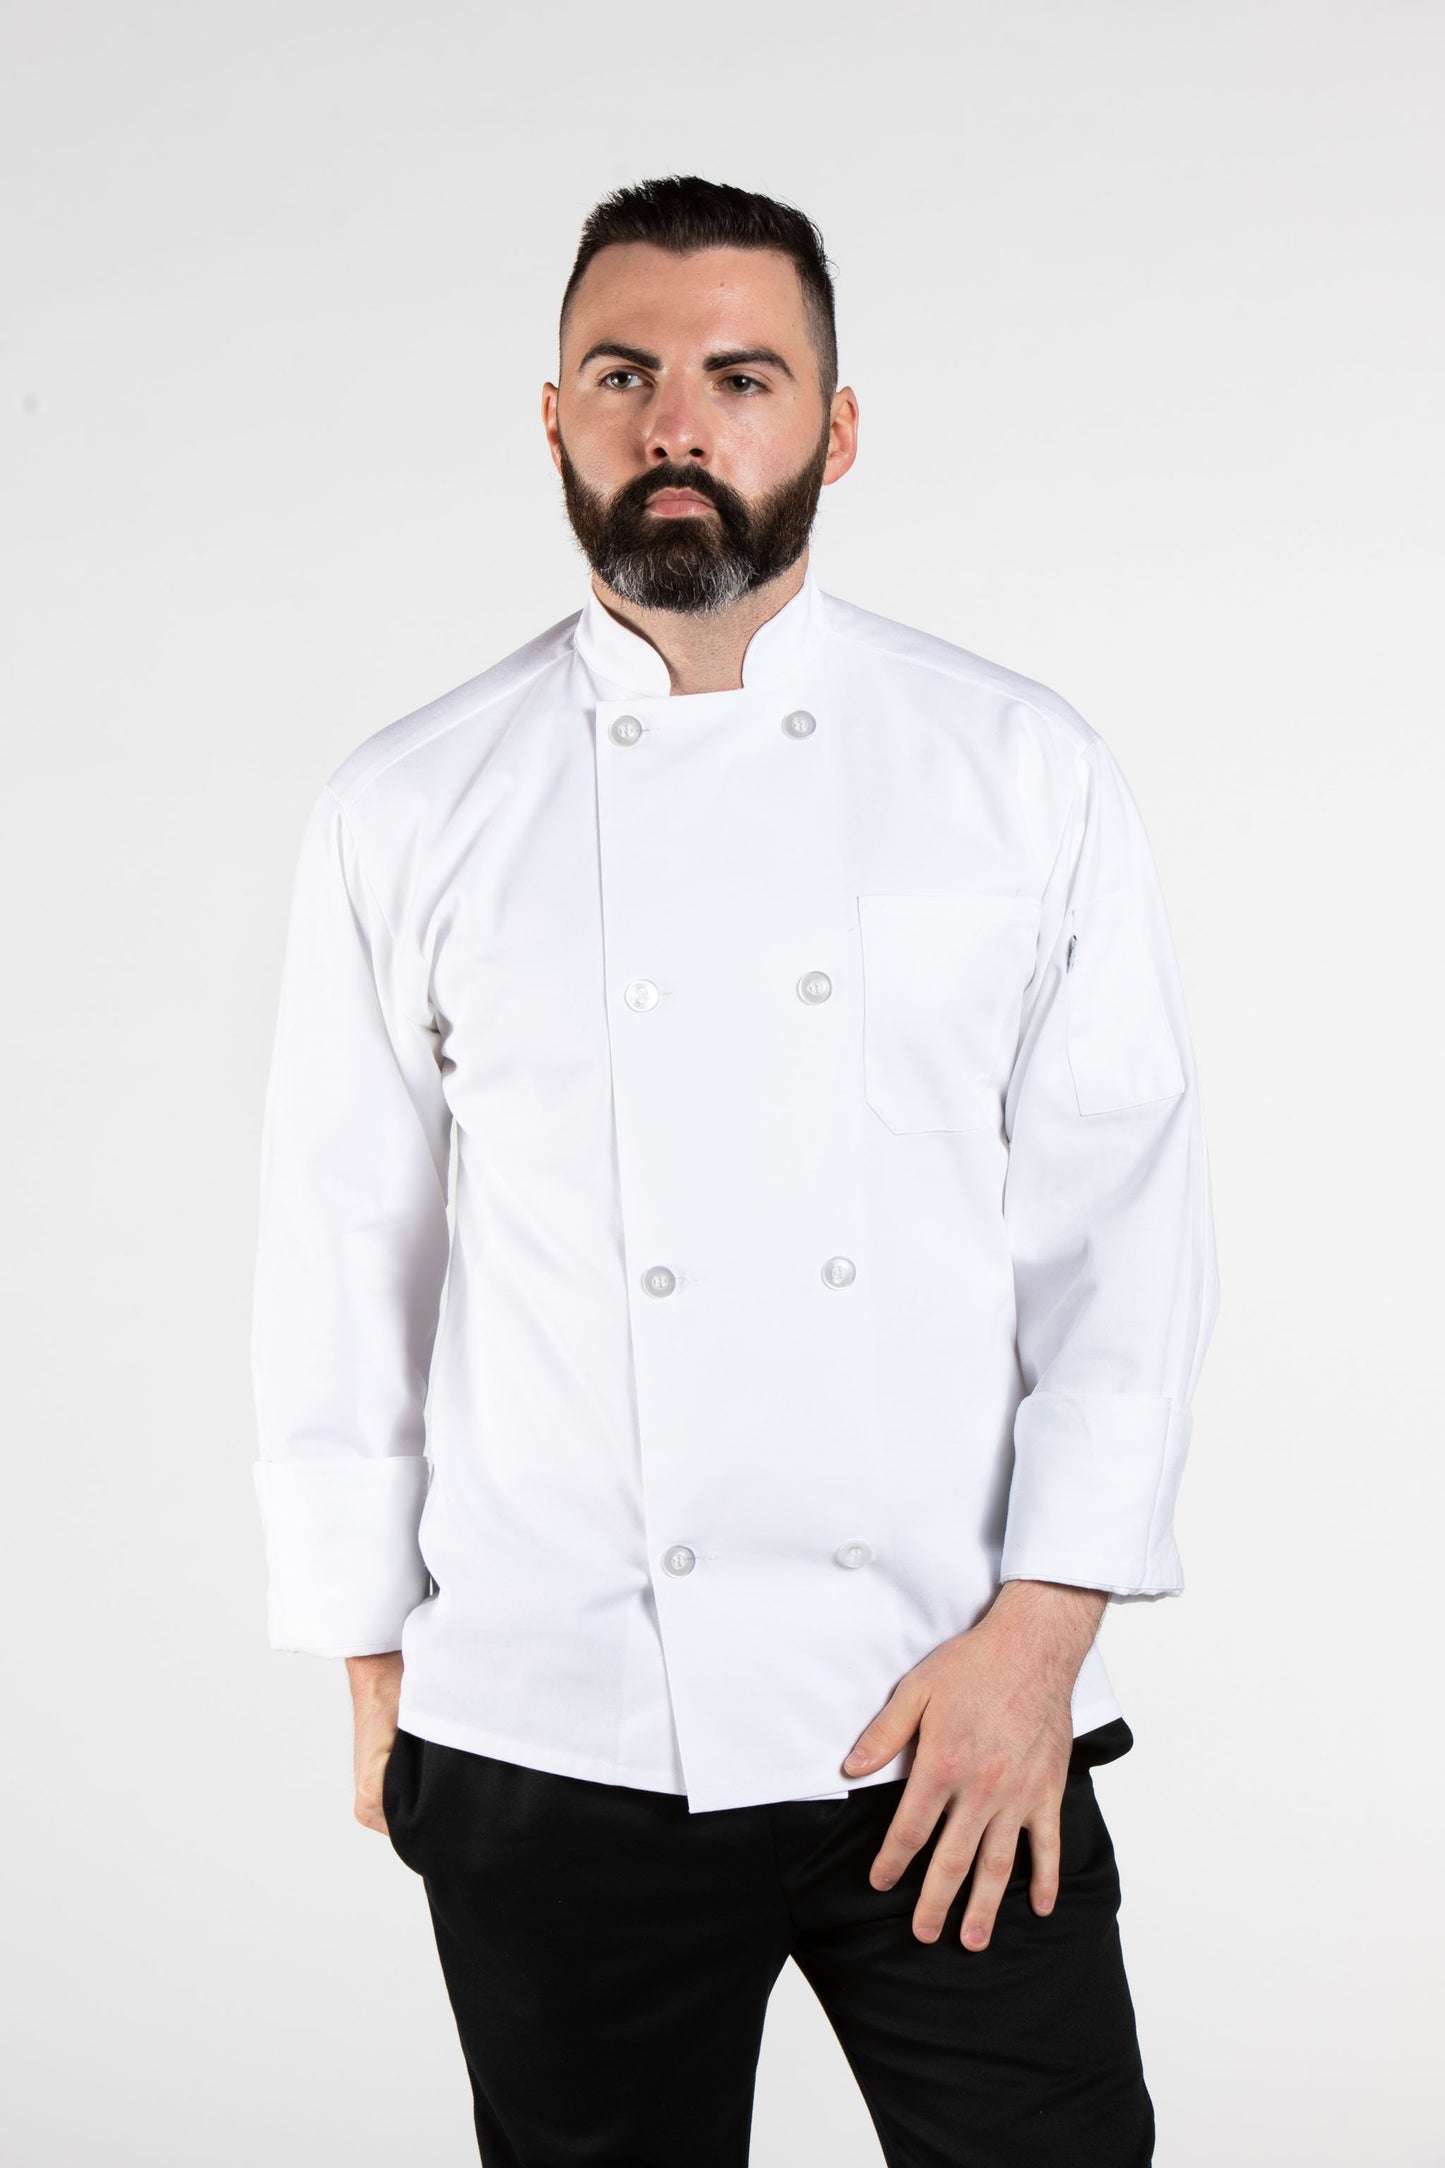 Uncommon Chef Coat #0400